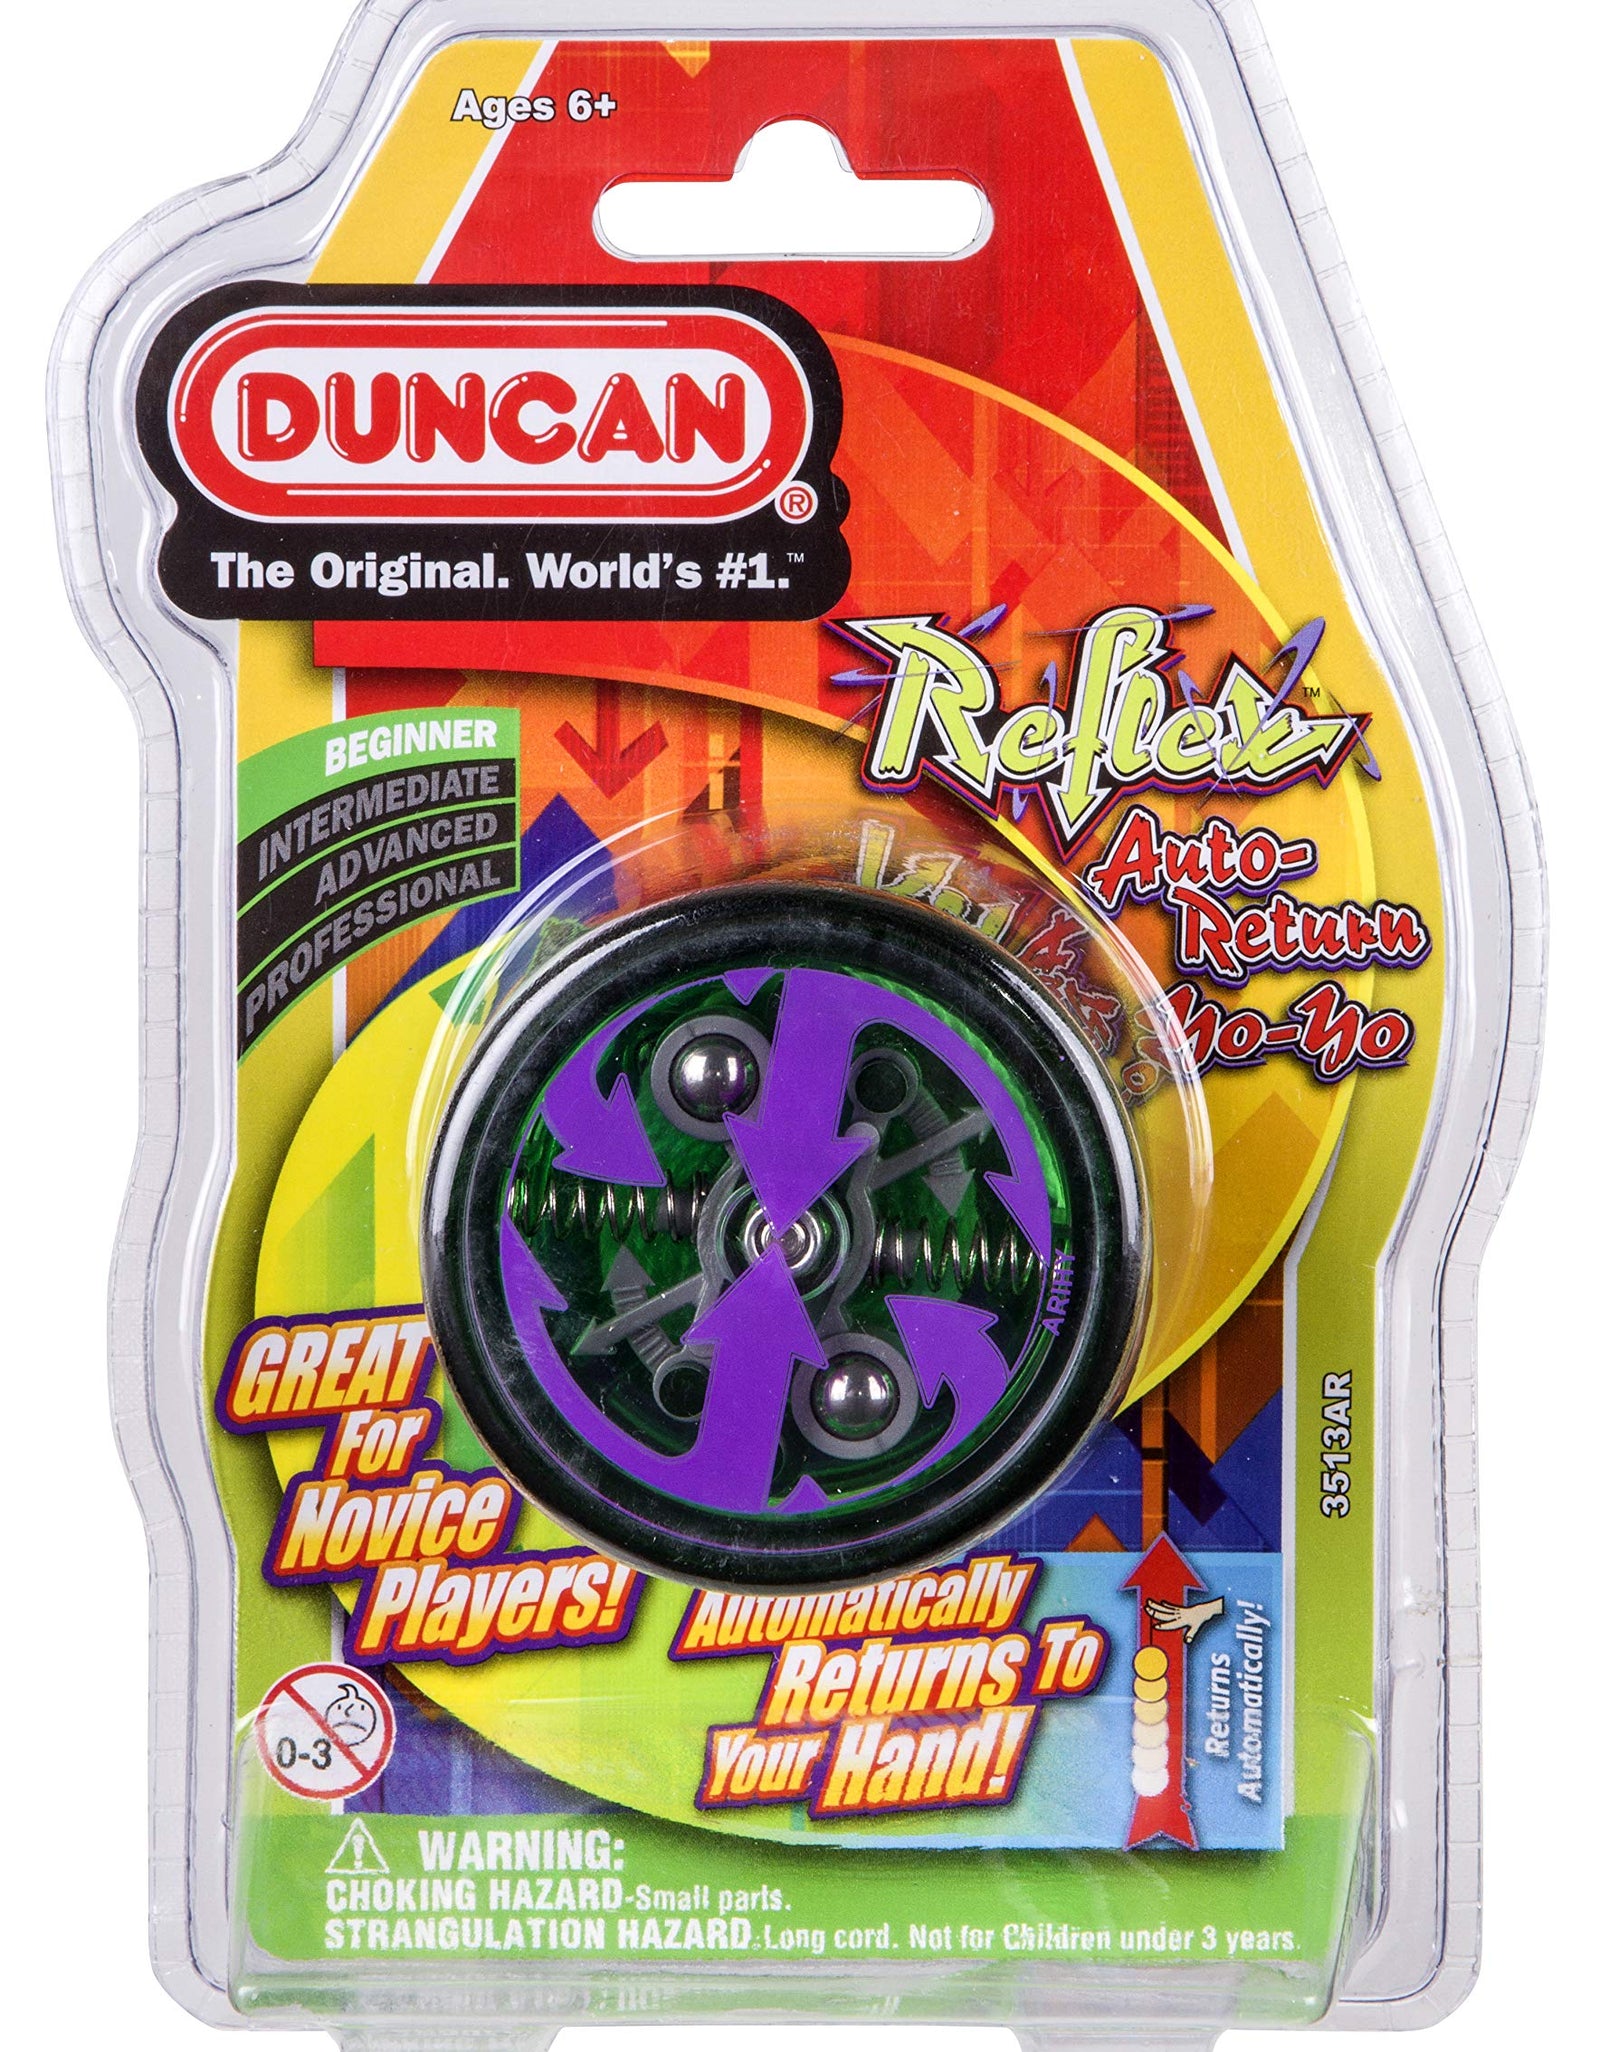 Duncan Toys Reflex Auto Return Yo-Yo, Beginner String Trick Yo-Yo, Green